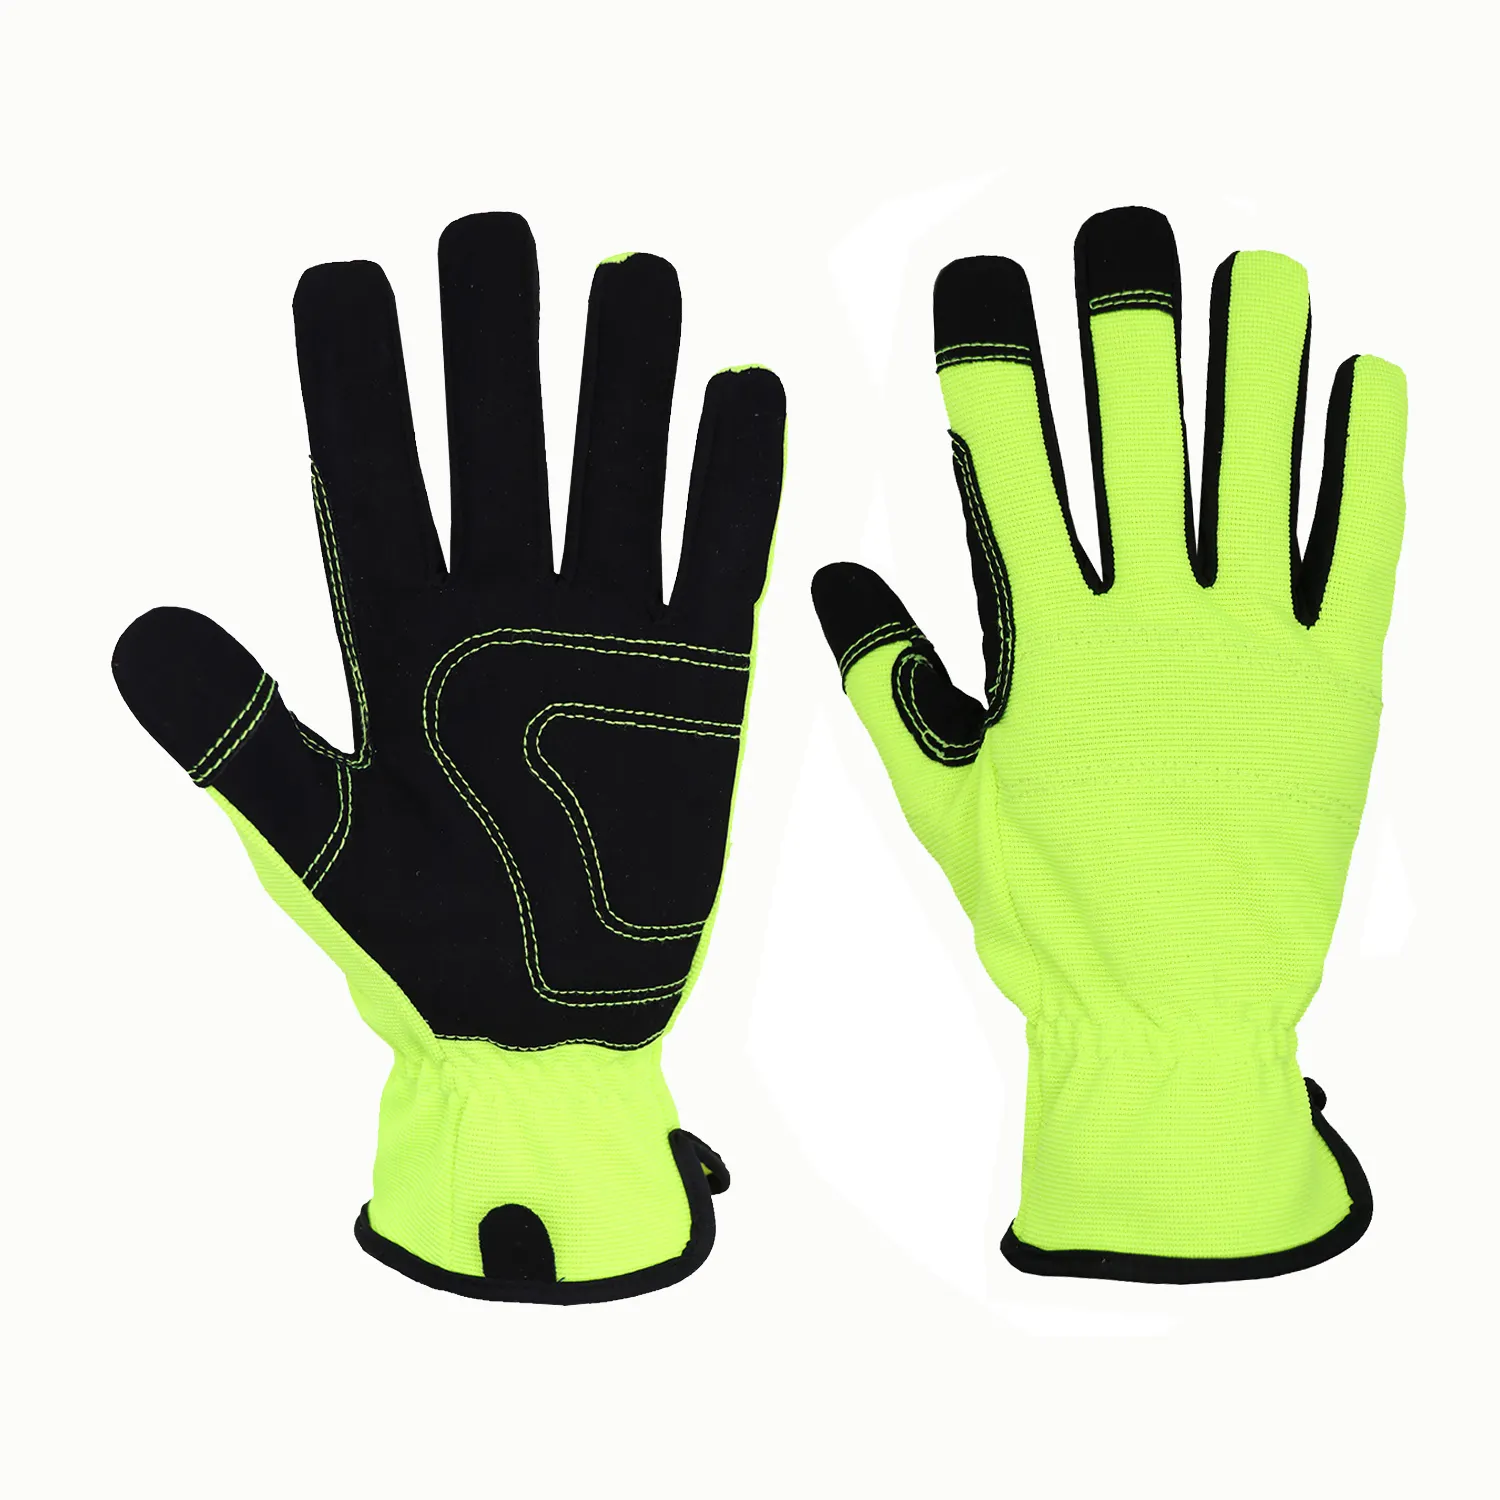 Hand Gloves Gloves HANDLANDY Green Nubuck Touchscreen Car Repair Work Gloves Vibration-Resistant Hand Gloves For Light Work